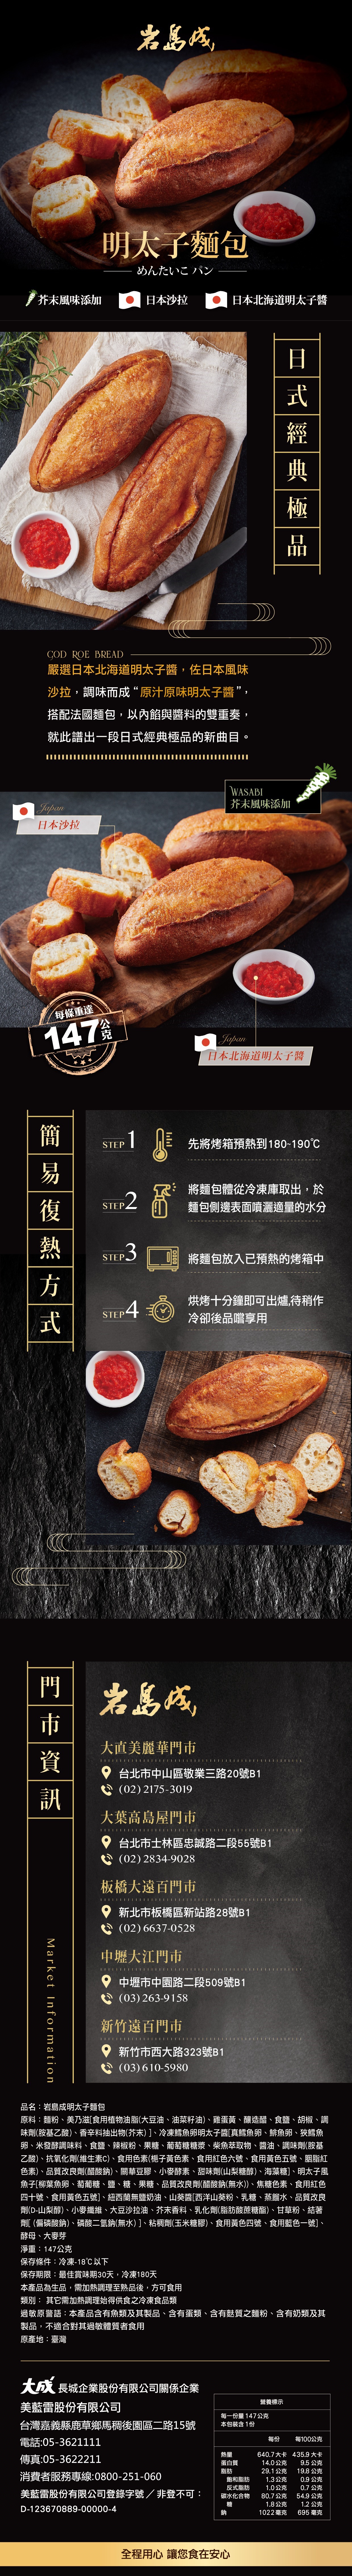 【大成食品】岩島成明太子麵包 147g/入 使用頂級日本北海道明太子醬